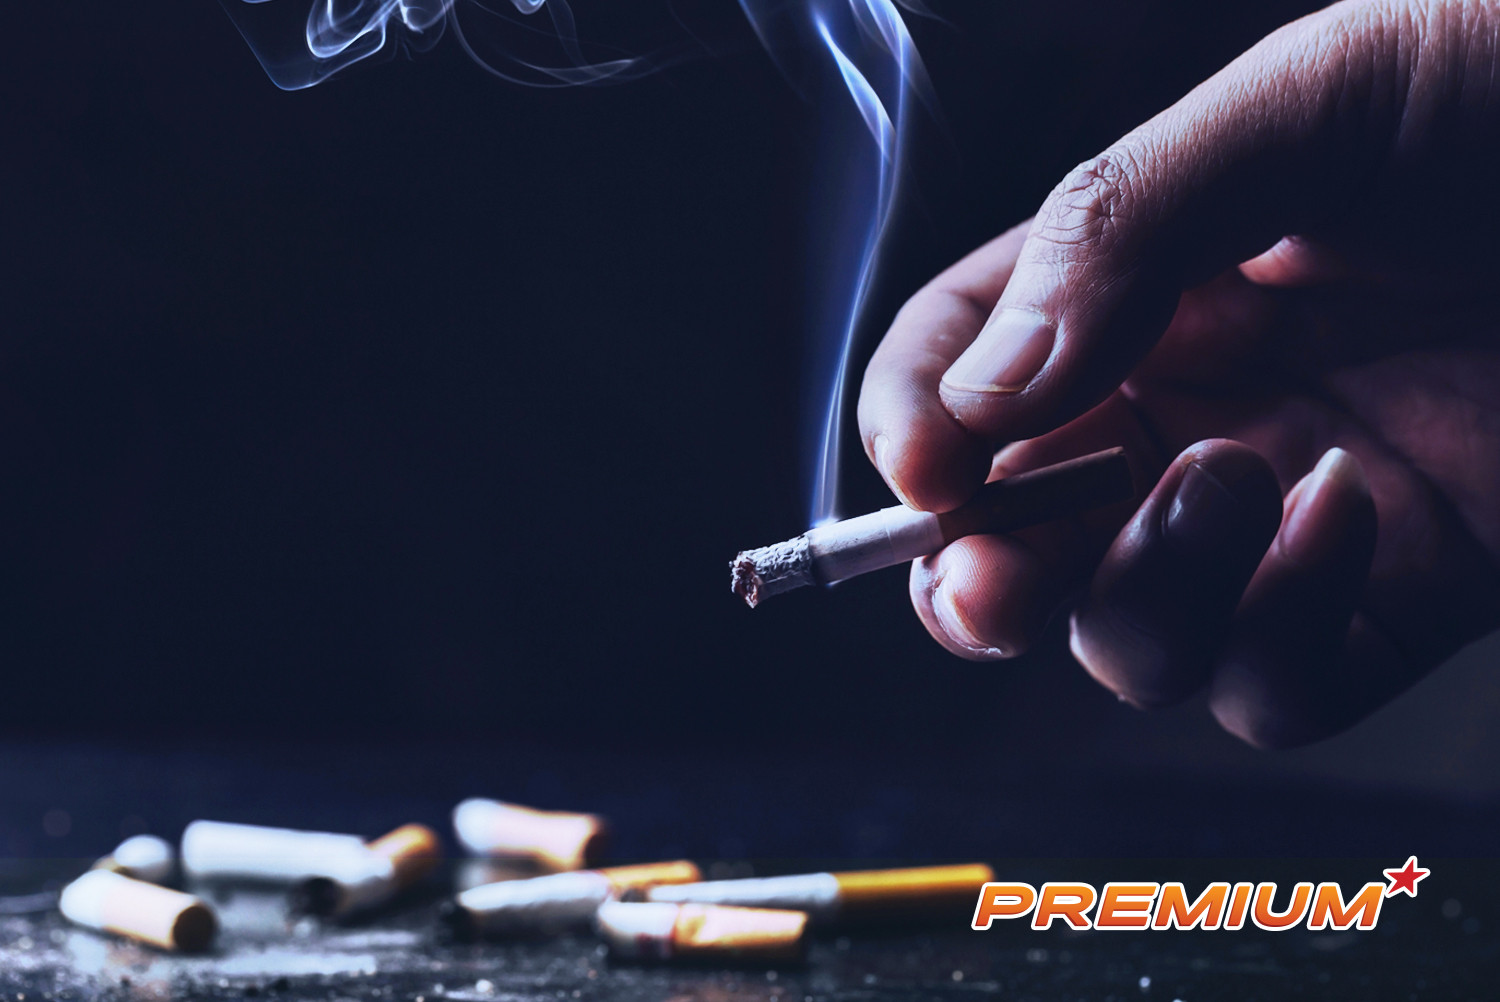 Việt Nam thuộc nhóm 15 nước nam giới hút thuốc lá nhiều nhất thế giới